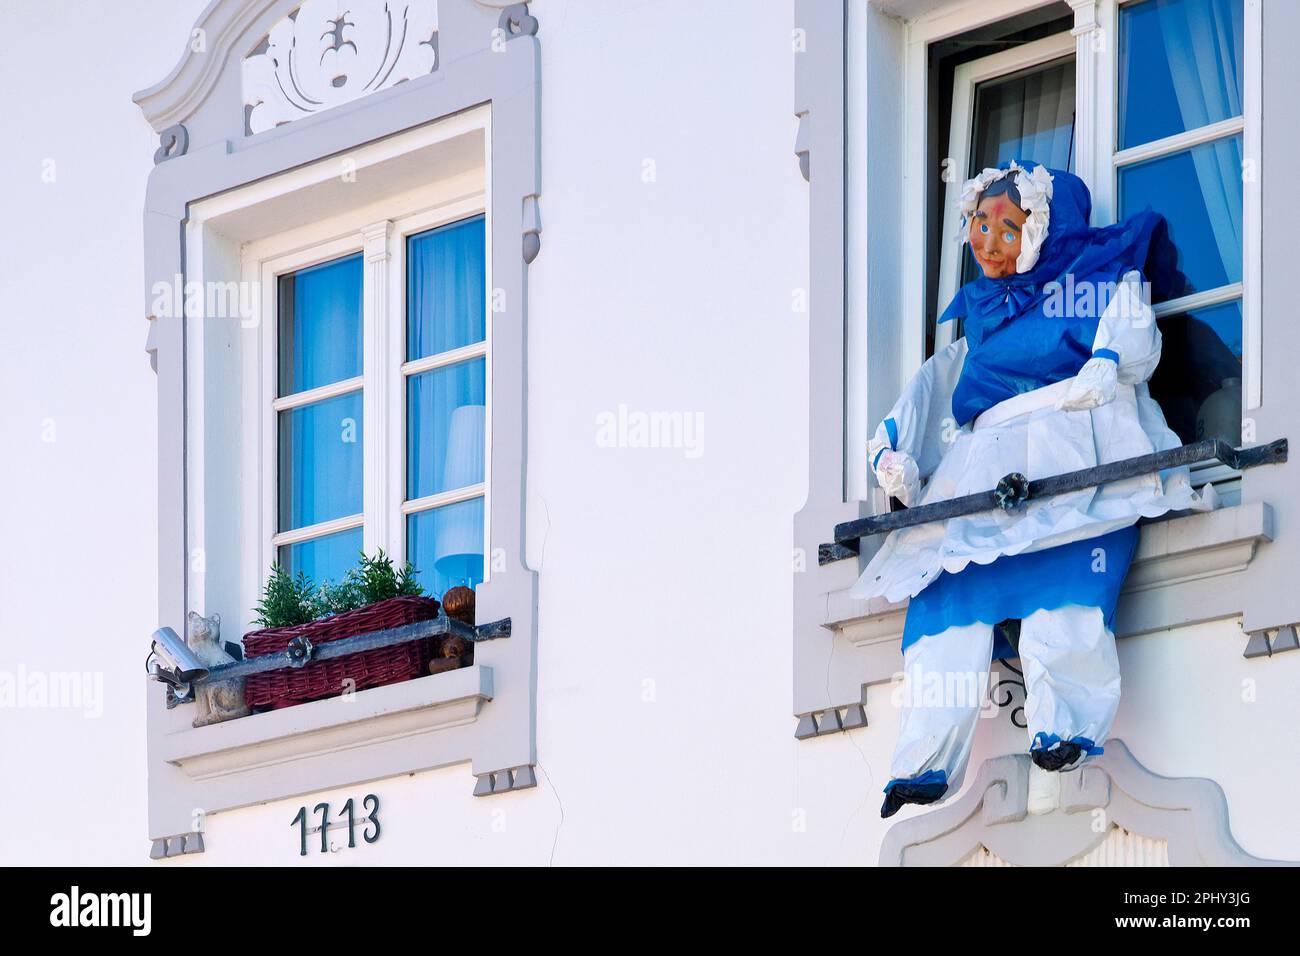 karnevalszeit mit moehne-Plastikfigur am Fenster, Deutschland, Nordrhein-Westfalen, Niederrhein, Erkelenz Stockfoto